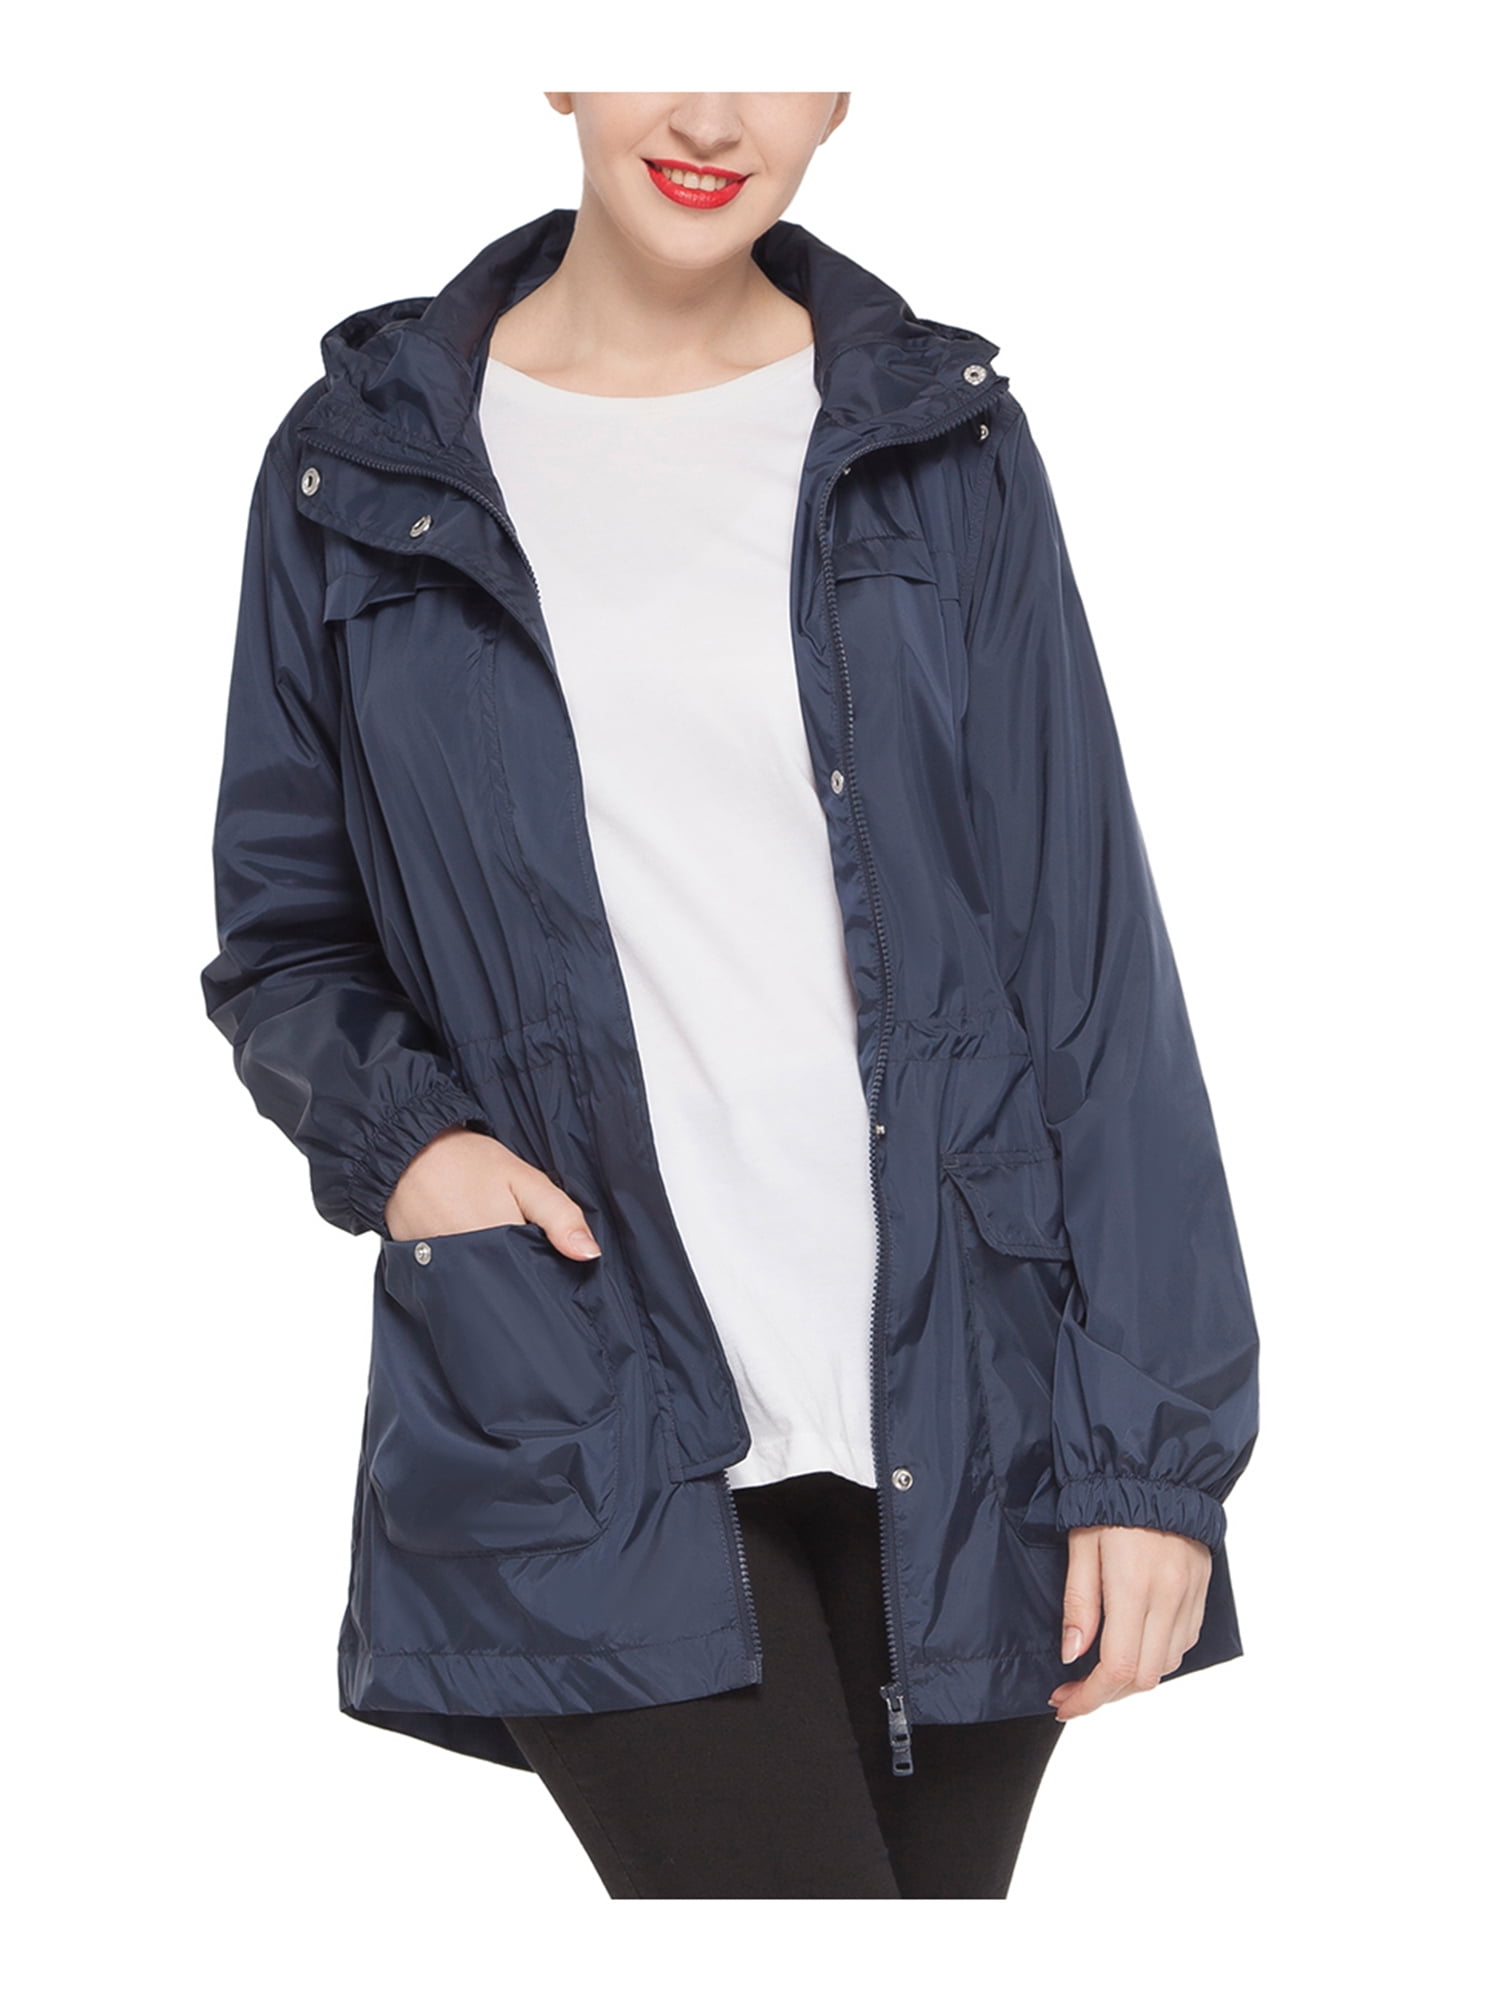 DEELIN 2019 Sale Autumn Winter Casual Daily Coats Women Solid Rain Jacket Outdoor Plus Waterproof Hooded Raincoat Windproof Windbreaker Outwear 14 Colors 8 Sizes 